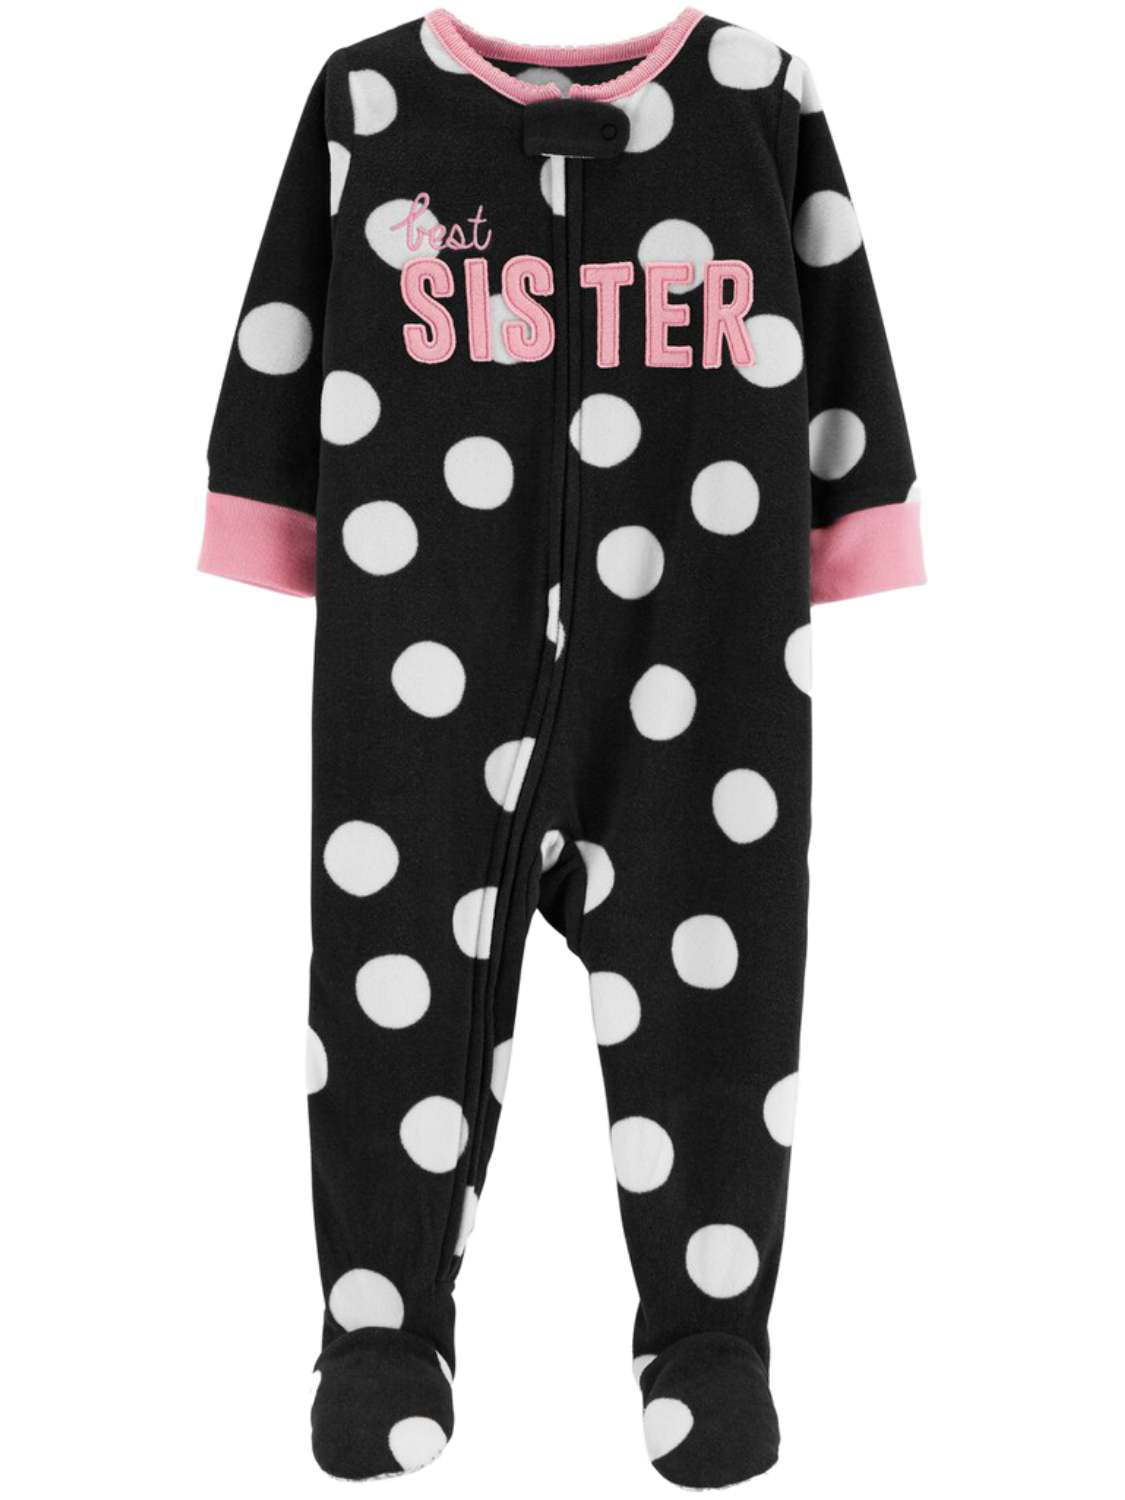 Carter's Carters Infant Girls Black Polka Dot Best Sister Sleeper Footie Pajamas